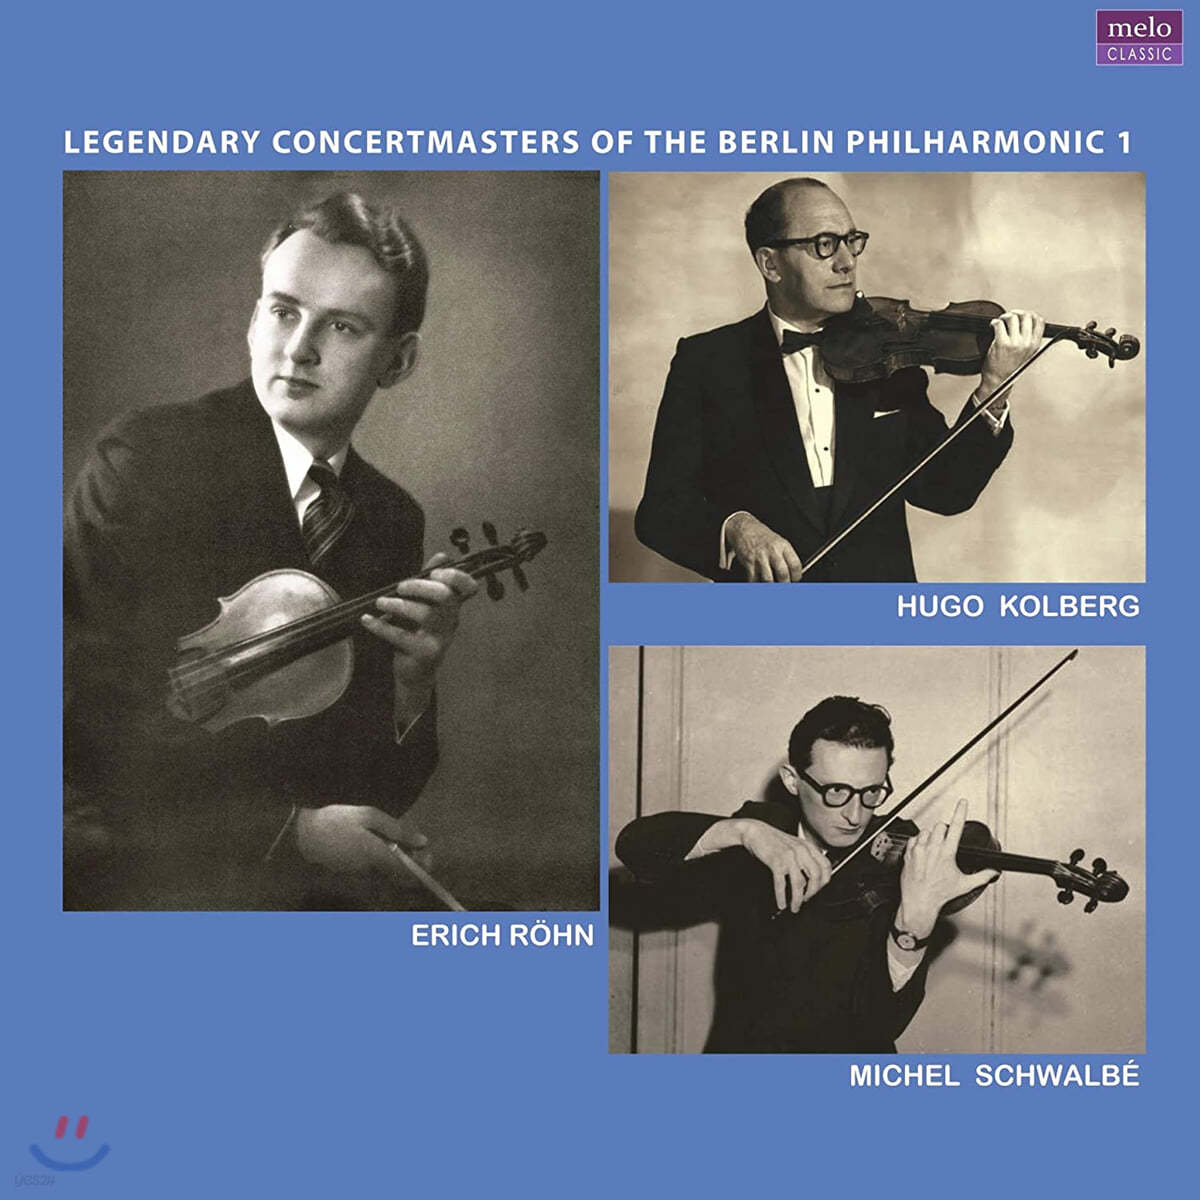 베를린 필의 전설의 악장들 1집 - 에리히 뢴, 후고 콜베르크, 미셸 슈발베 (Legendary Concertmasters Of the Berlin Philharmonice 1) [2LP] 